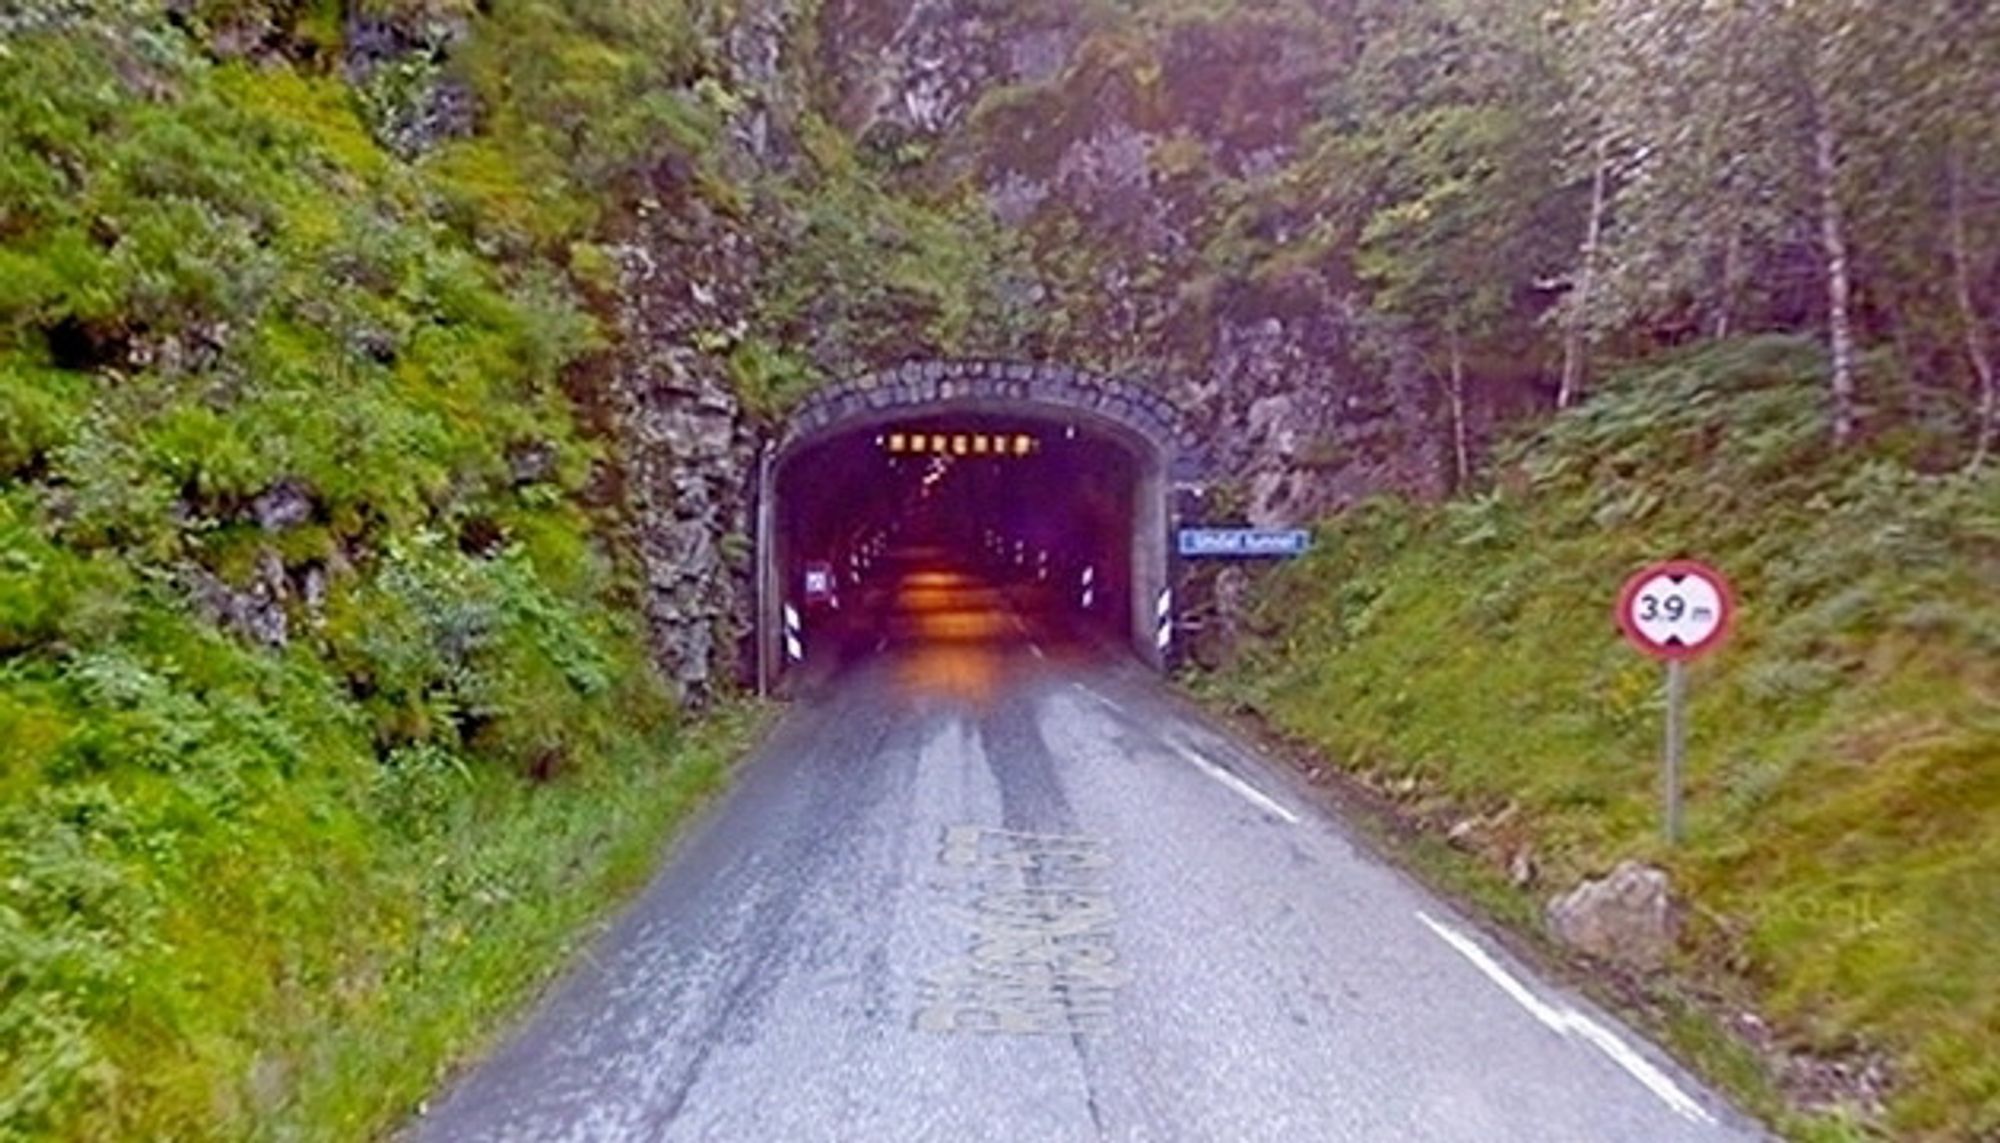 Nordre portal viser tydelig at Undalstunnelen har et ukurant profil. Mye tyder på at Birkeland Entreprenørforretning skal rette på det. (Foto: Google)